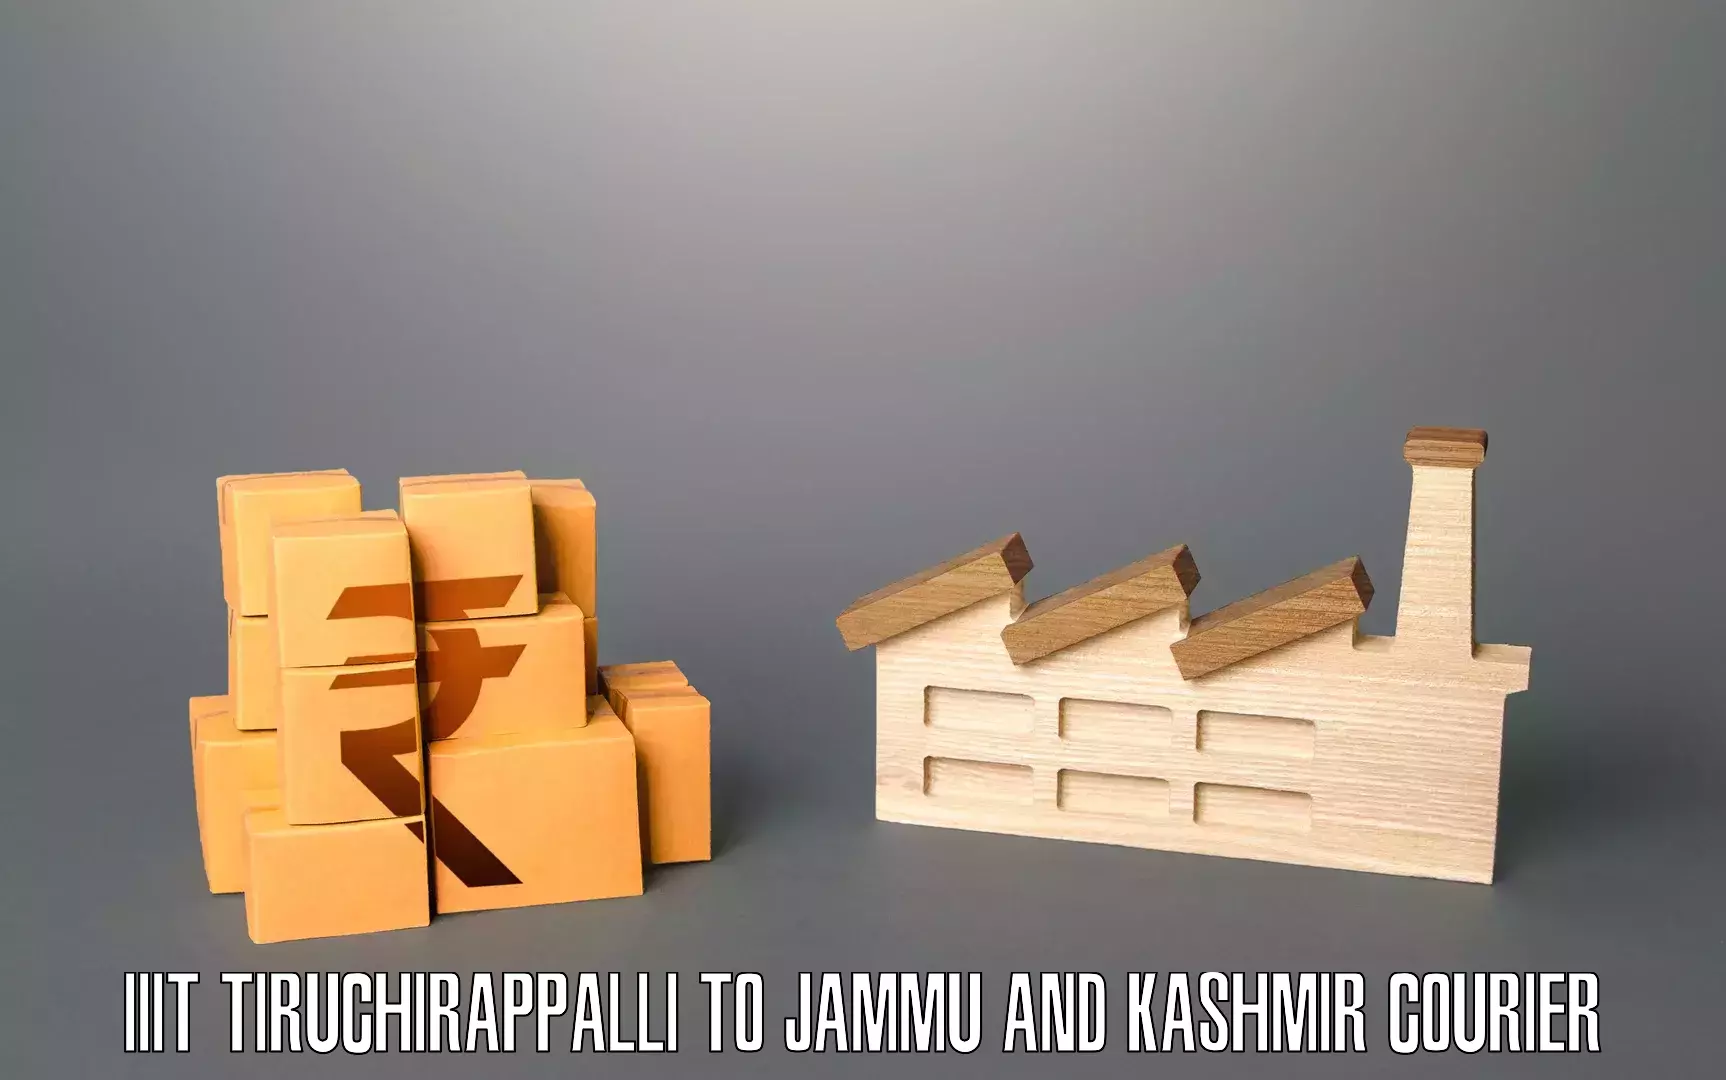 Efficient relocation services IIIT Tiruchirappalli to Srinagar Kashmir